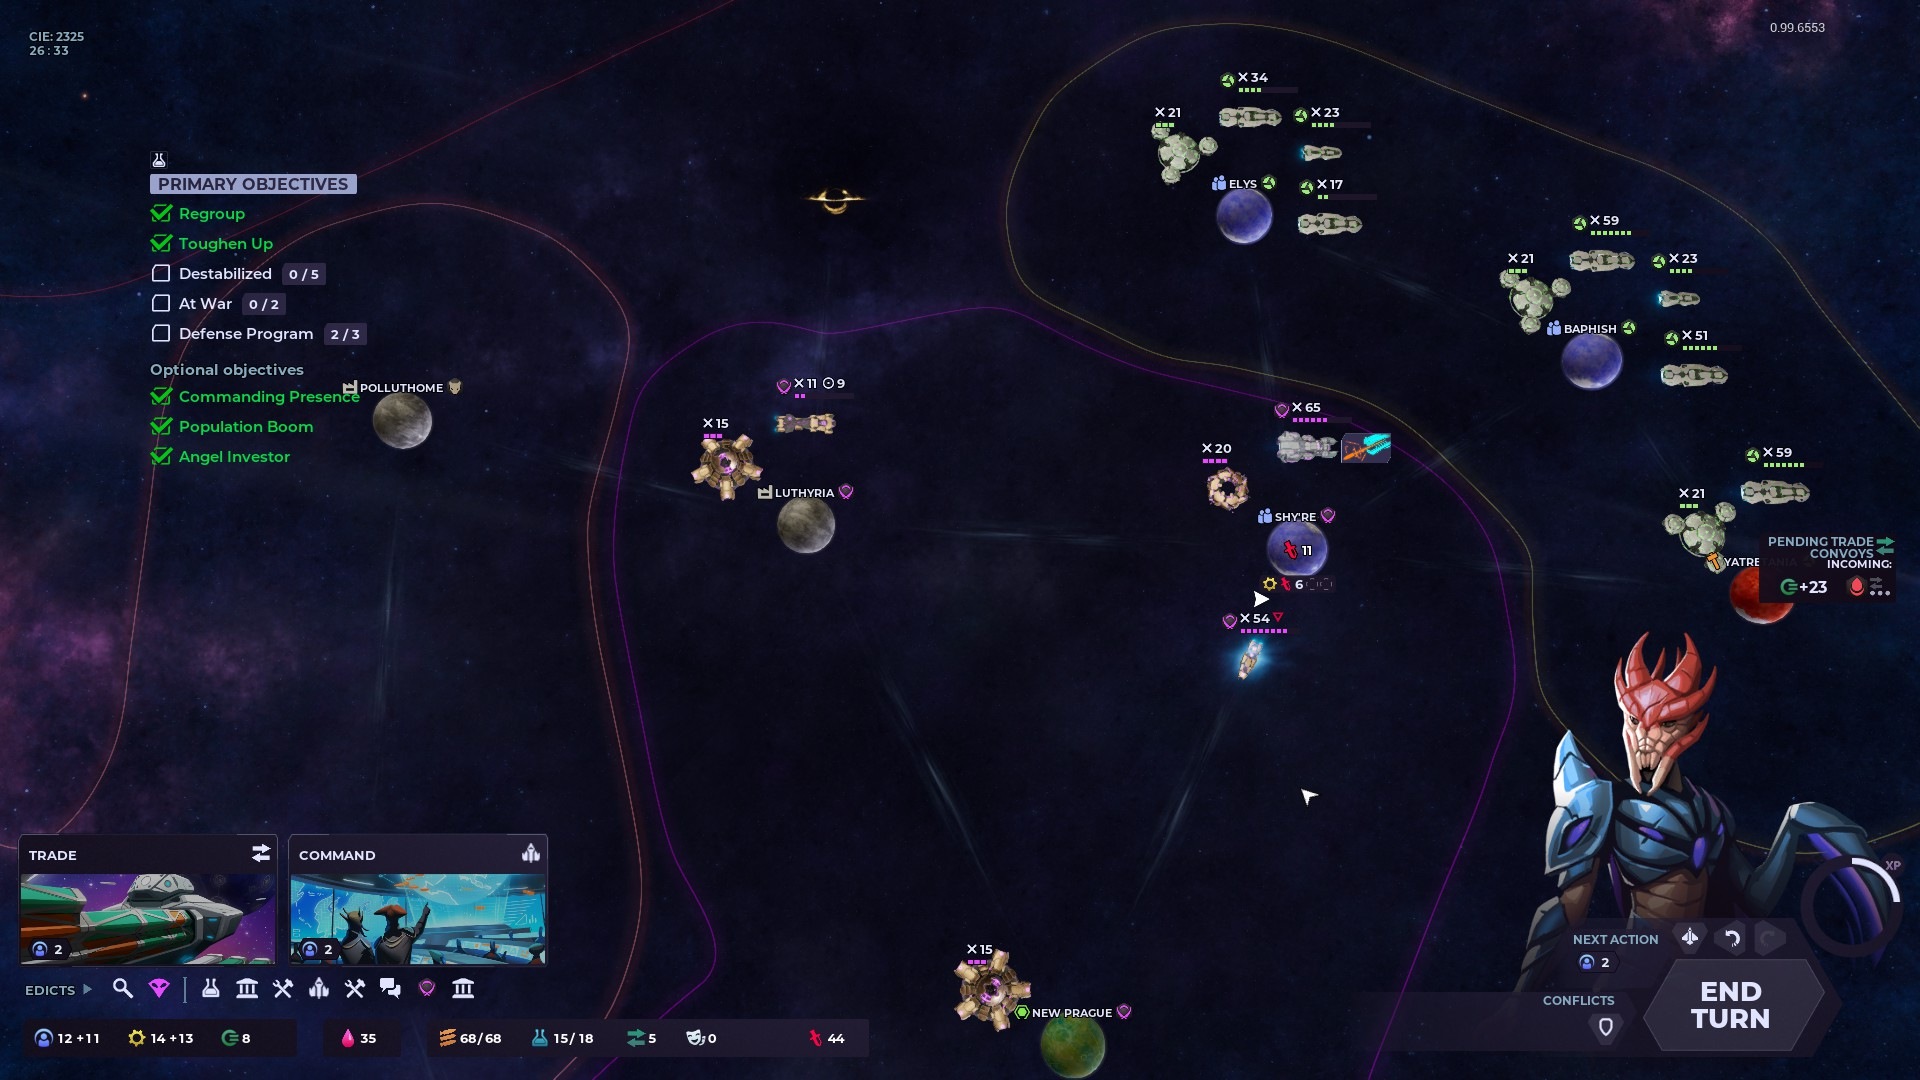 Testbericht zum Nexus 5X: Ein Foto des Weltraums, der End-of-Turn-Überlagerung des Spiels und einer außerirdischen Kreatur.